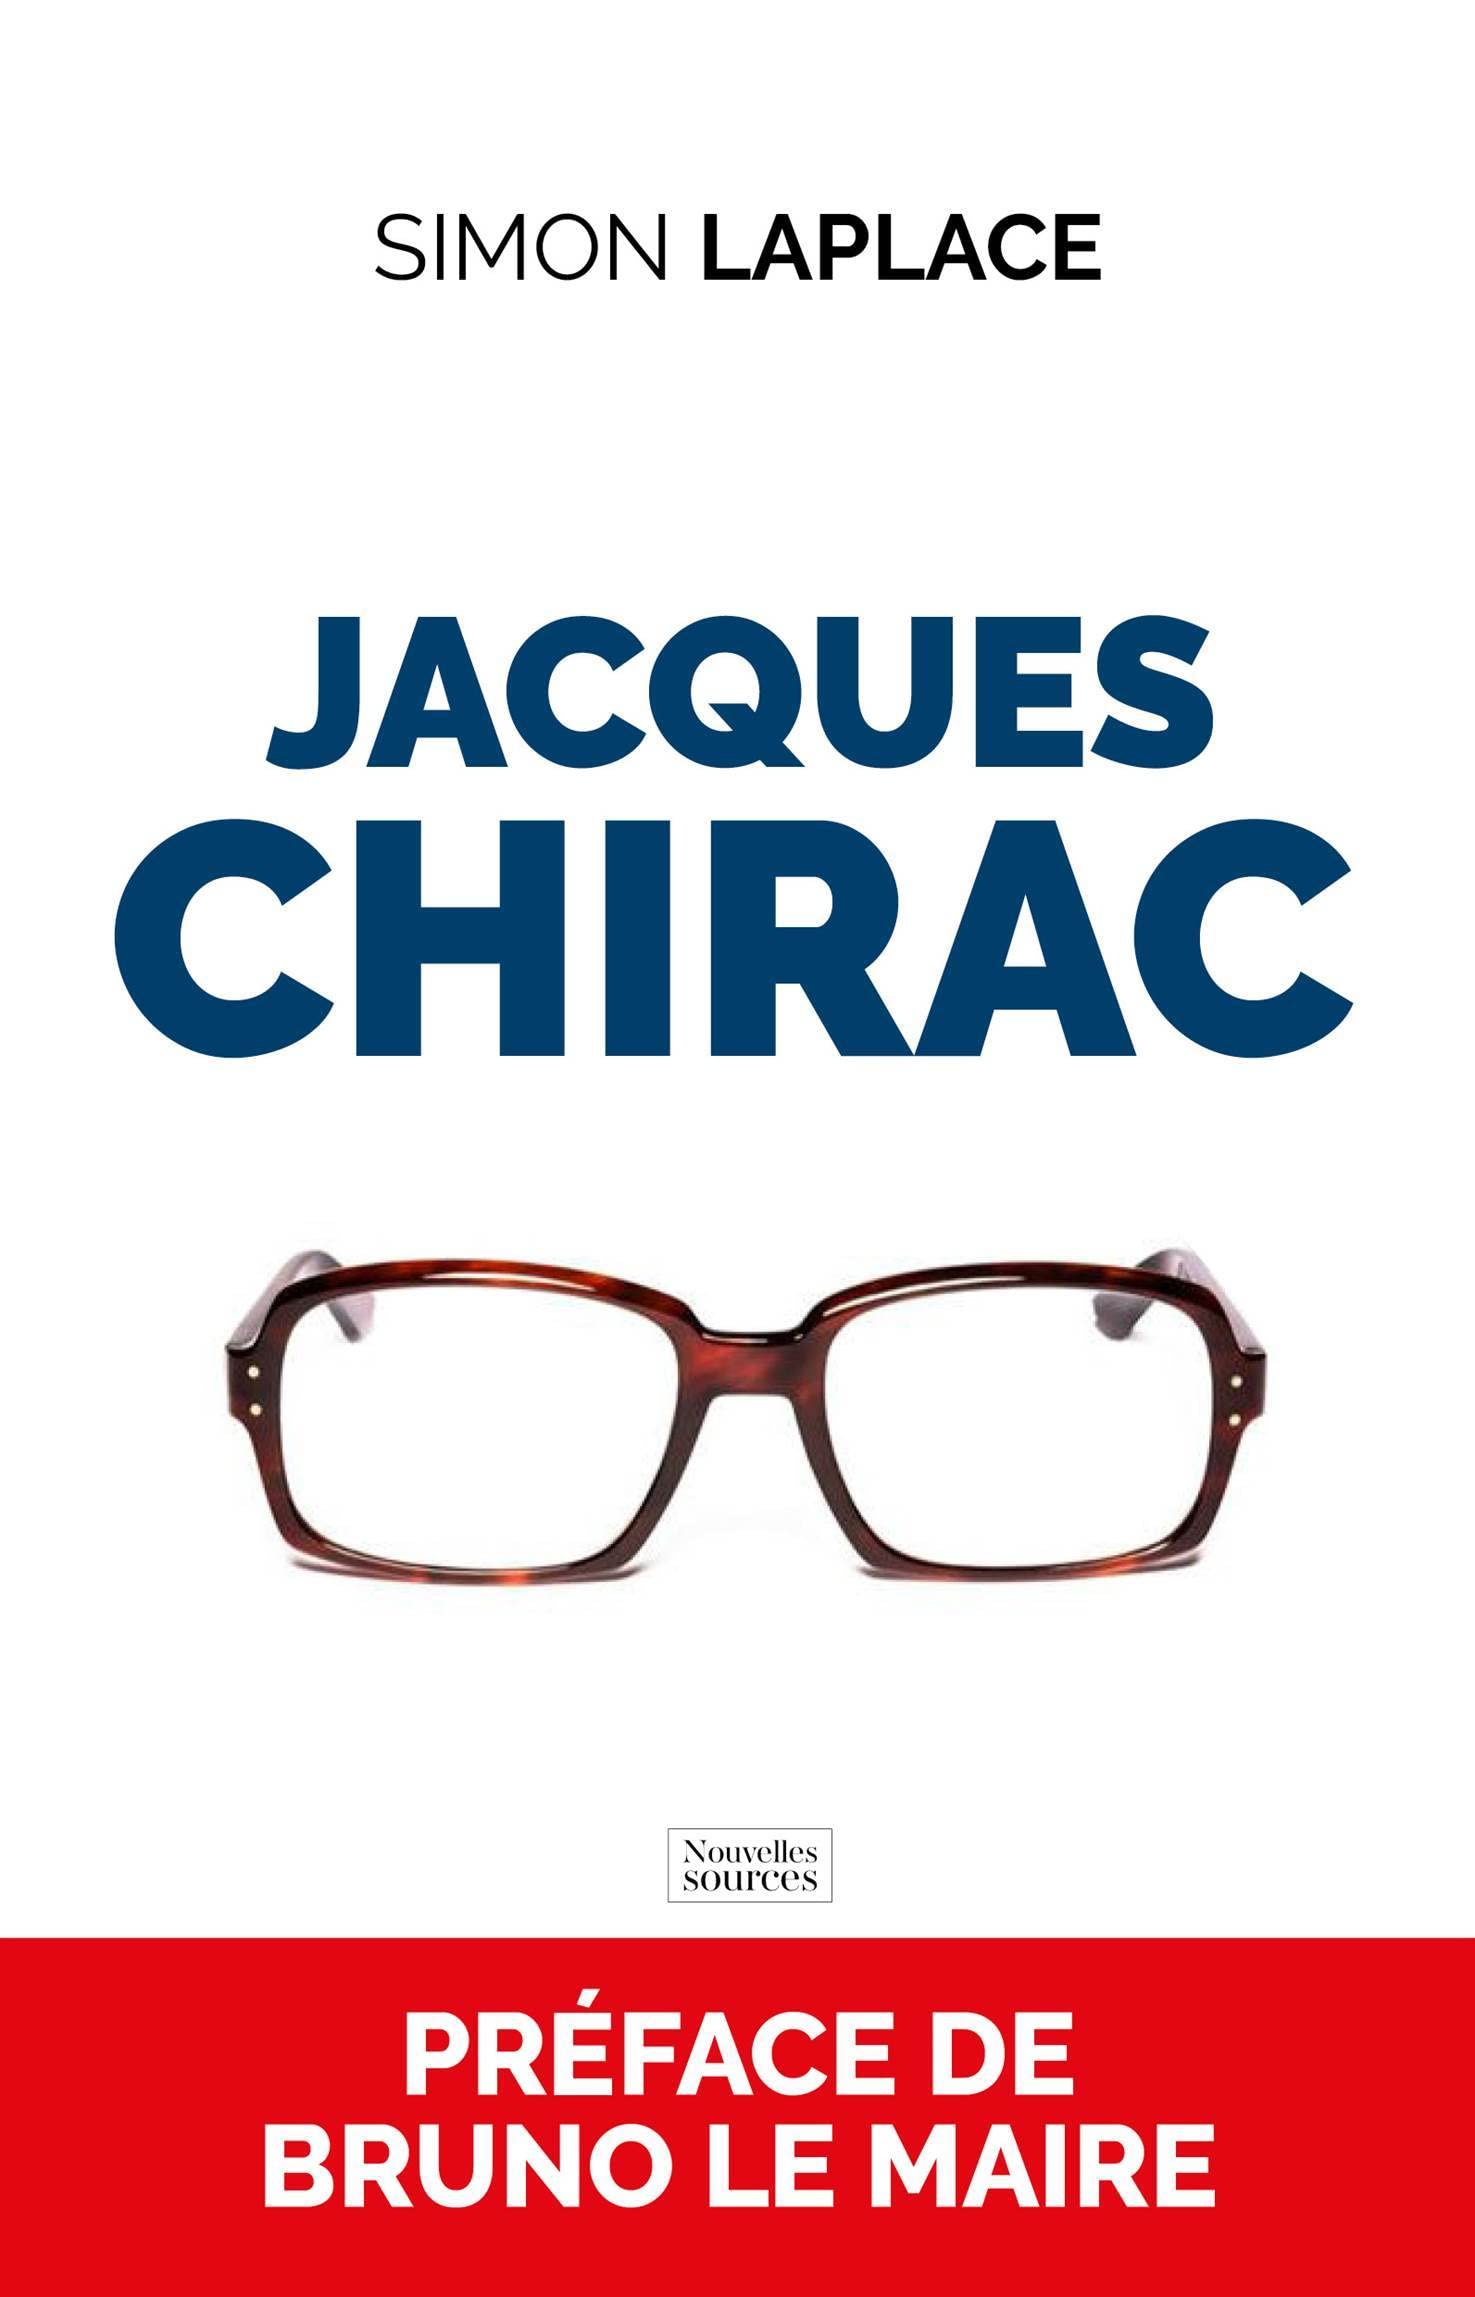 Jacques Chirac: Une histoire française